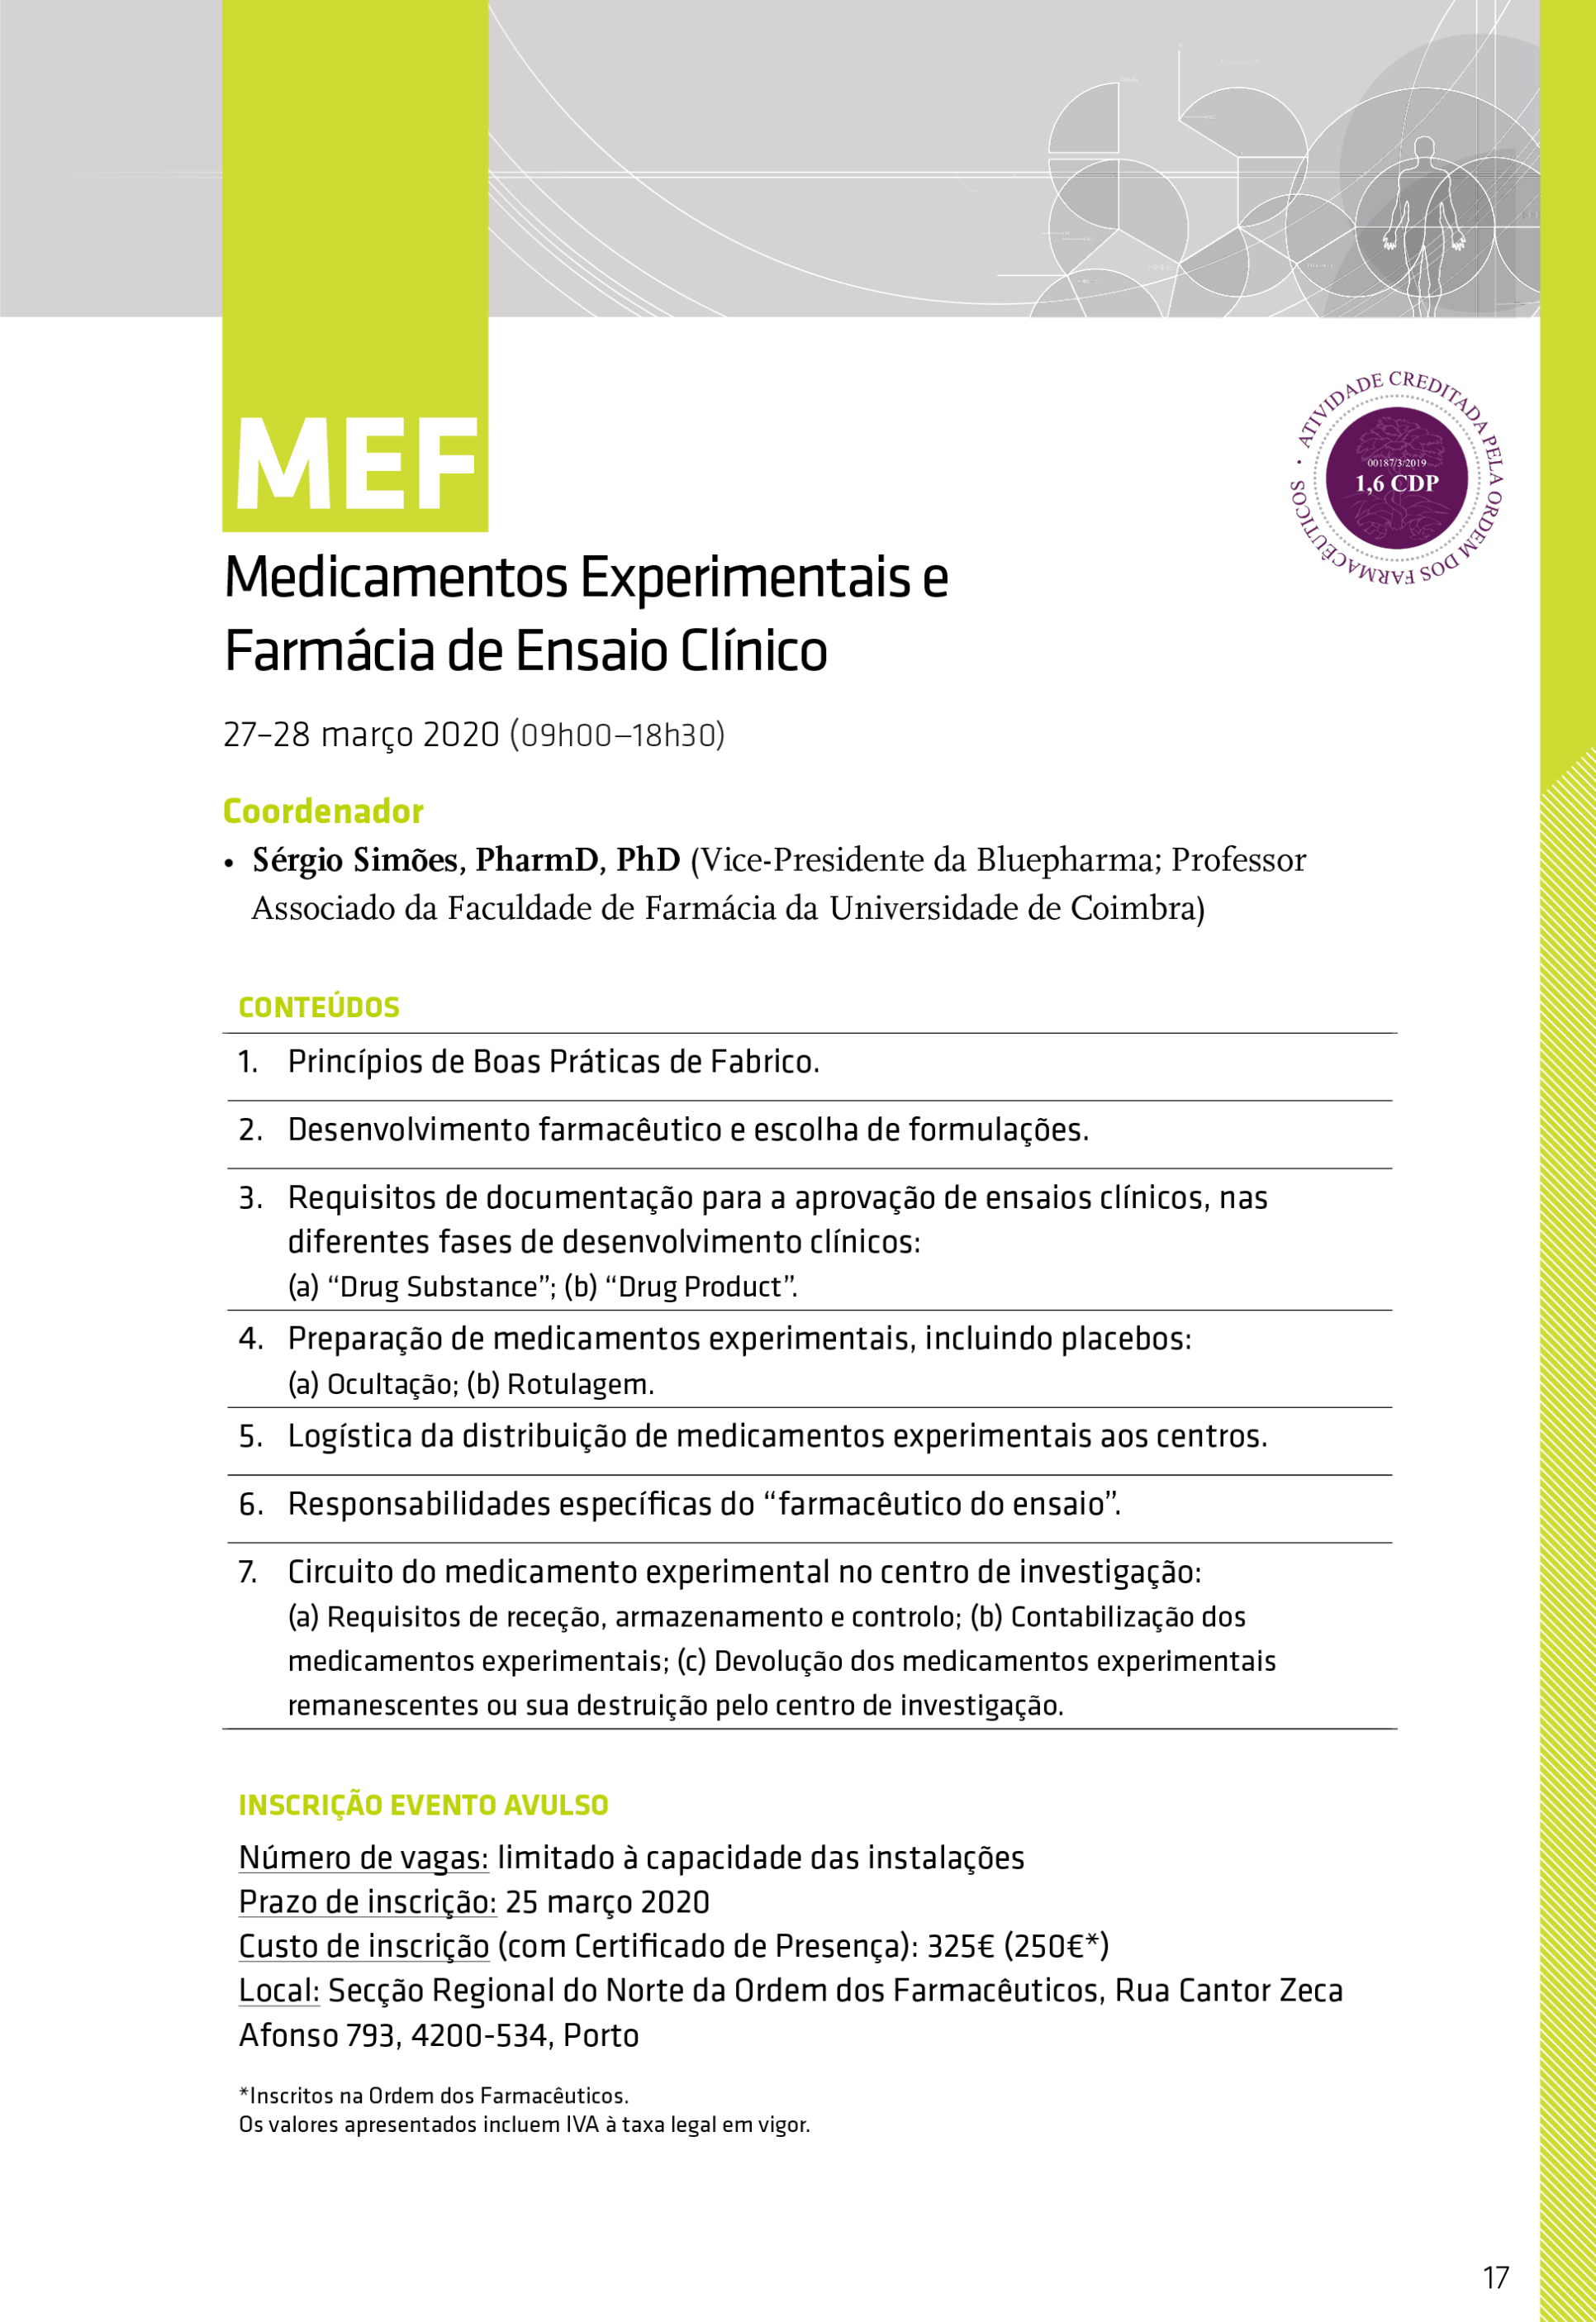 MEF - Programa